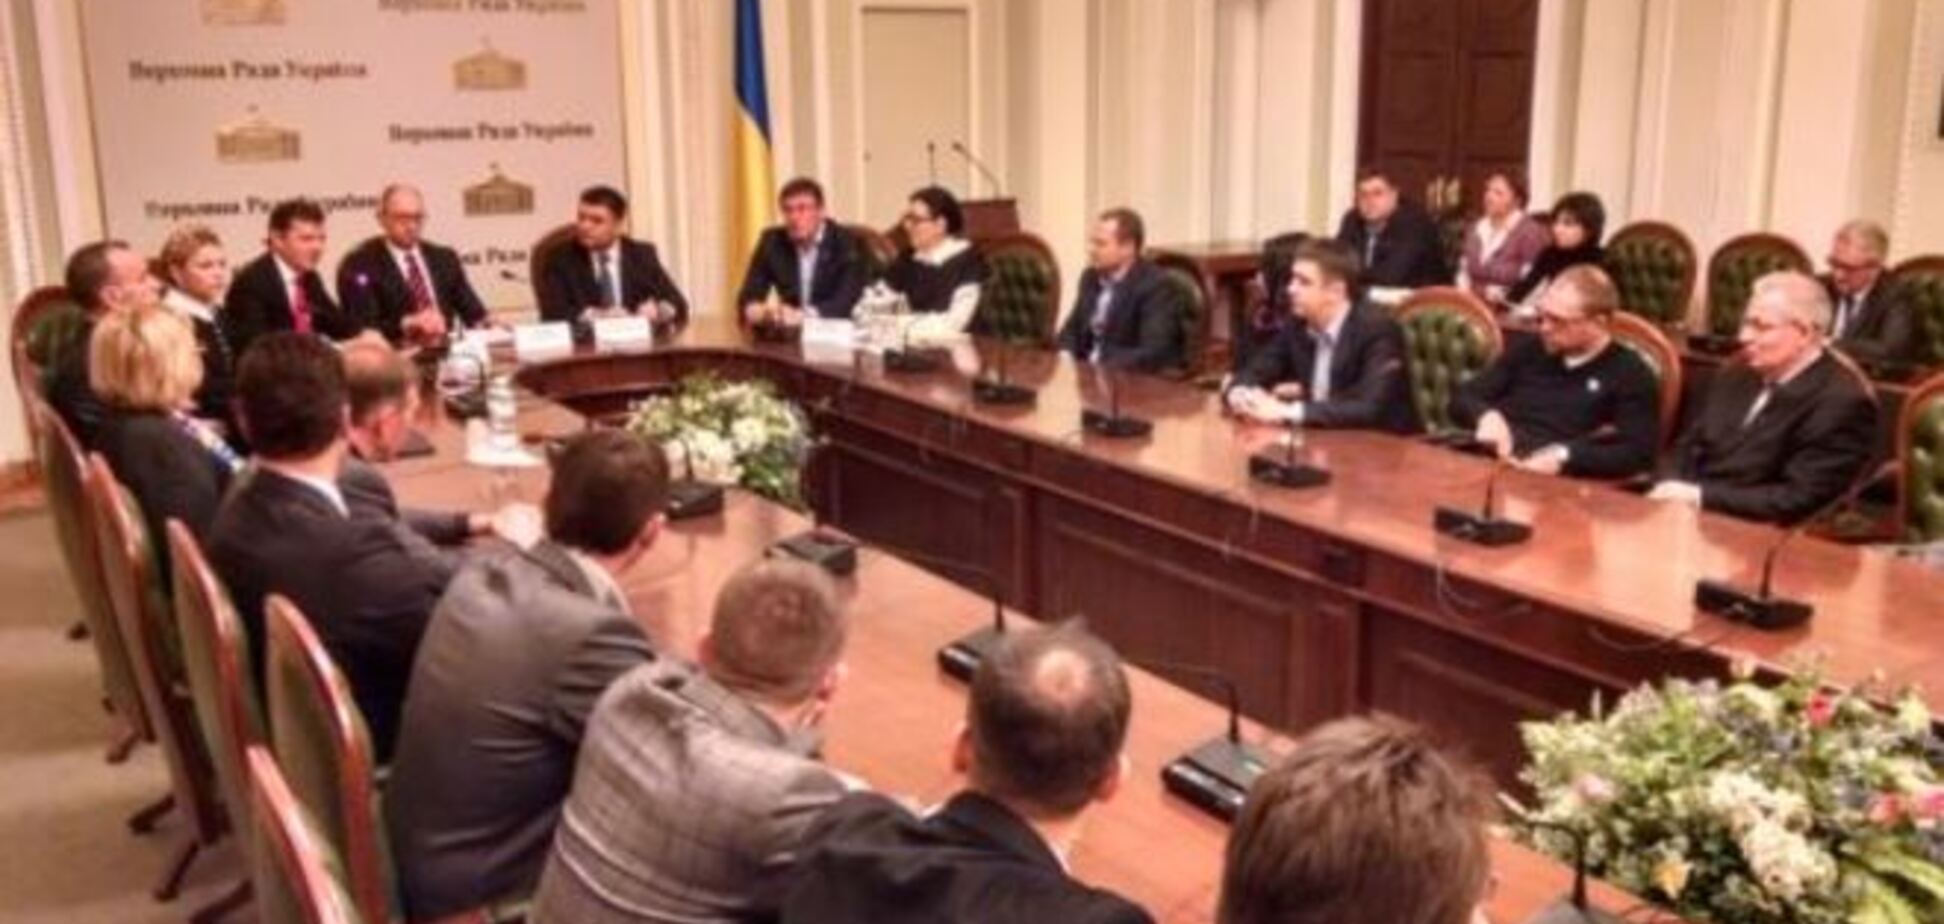 У Києві п'ять політсил підписали коаліційну угоду: опубліковано відео